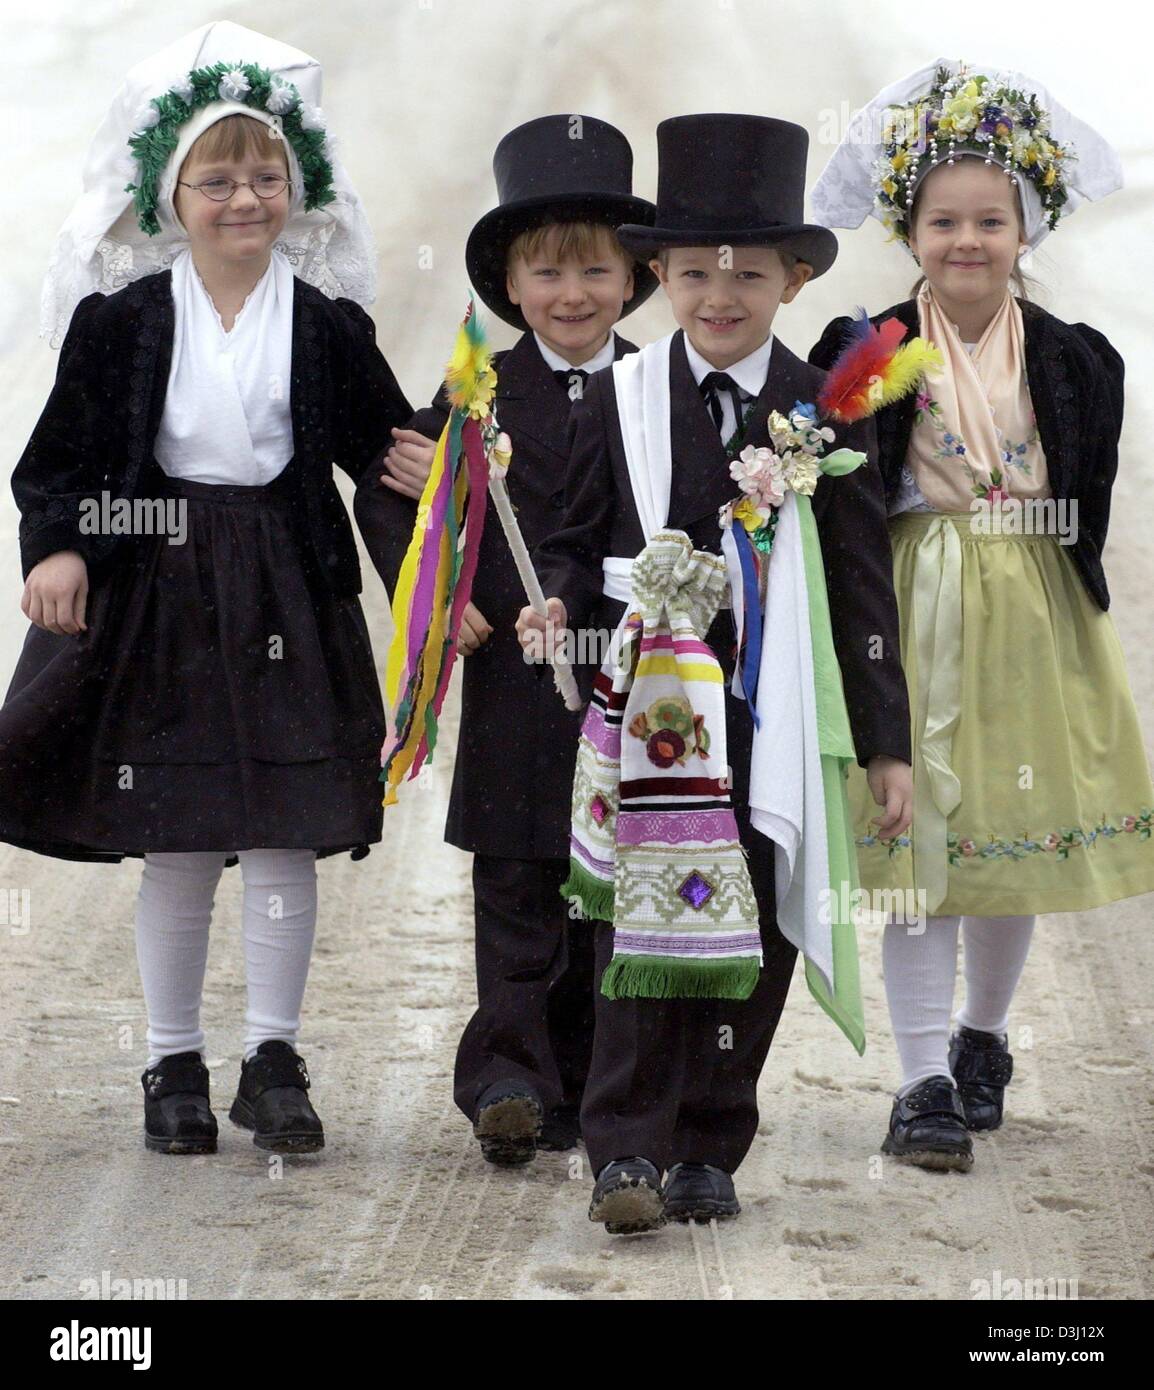 (Dpa) - das "Brautpaar" Christin (L) und William (2. v. L) sind begleitet von einladenden Simon und Brautjungfer Jasmin (R), wie alle Kinder in der traditionellen Kleidung für die Sorbisch gekleidet sind "Kinder Hochzeit" (Ptaci Kwas) in Sielow, Ostdeutschland, 29. Januar 2004. In der Vergangenheit eine offizielle Inviter (Hochzeitsbitter), gekleidet in ausgefallenen Kleidern geschmückt mit Bändern und Blumen, wo Stockfoto